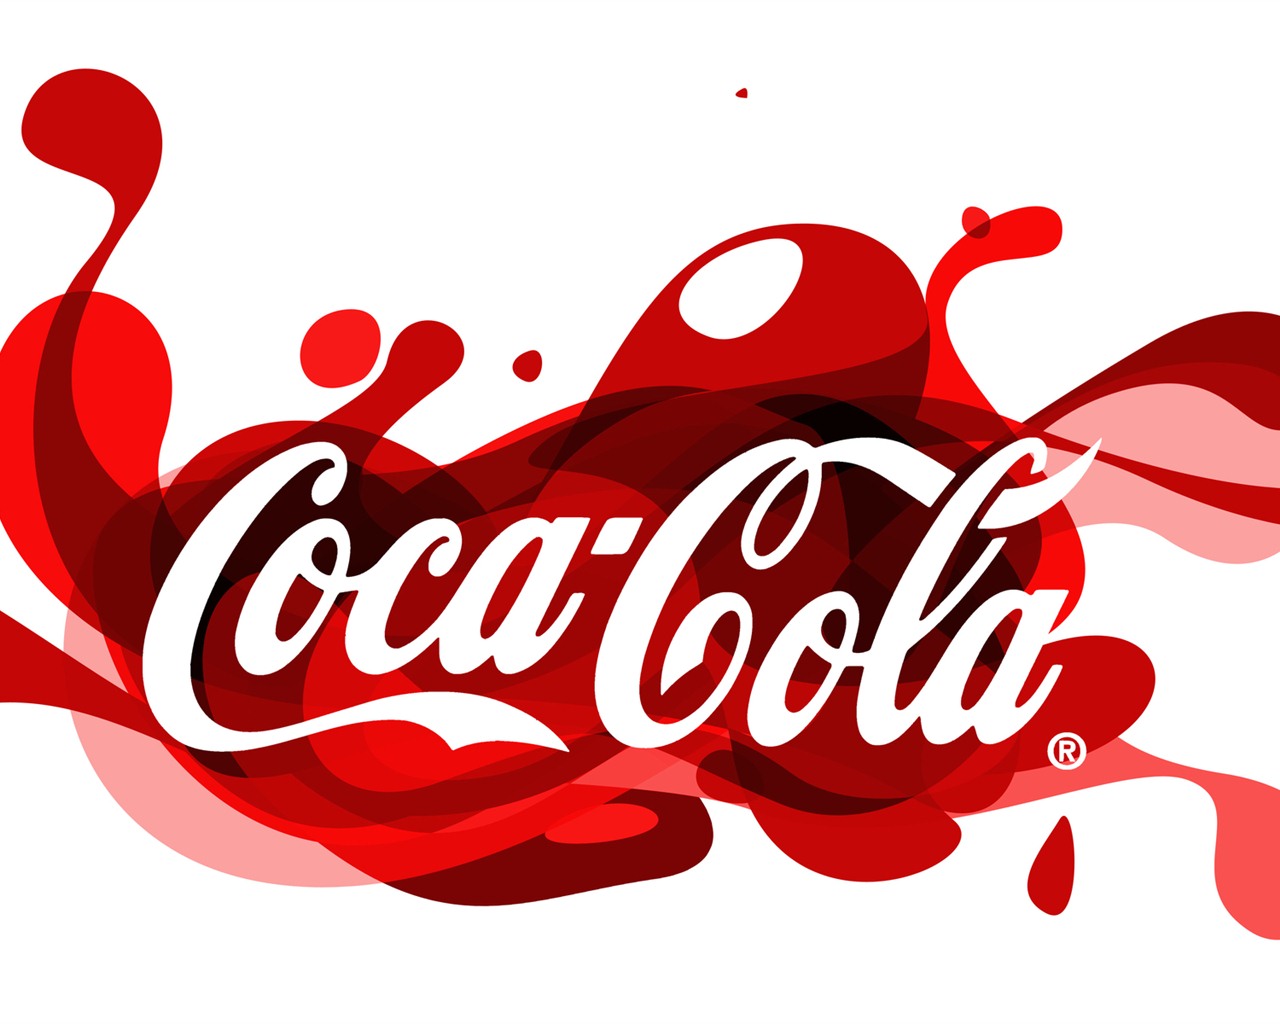 Coca-Cola beautiful ad wallpaper #12 - 1280x1024